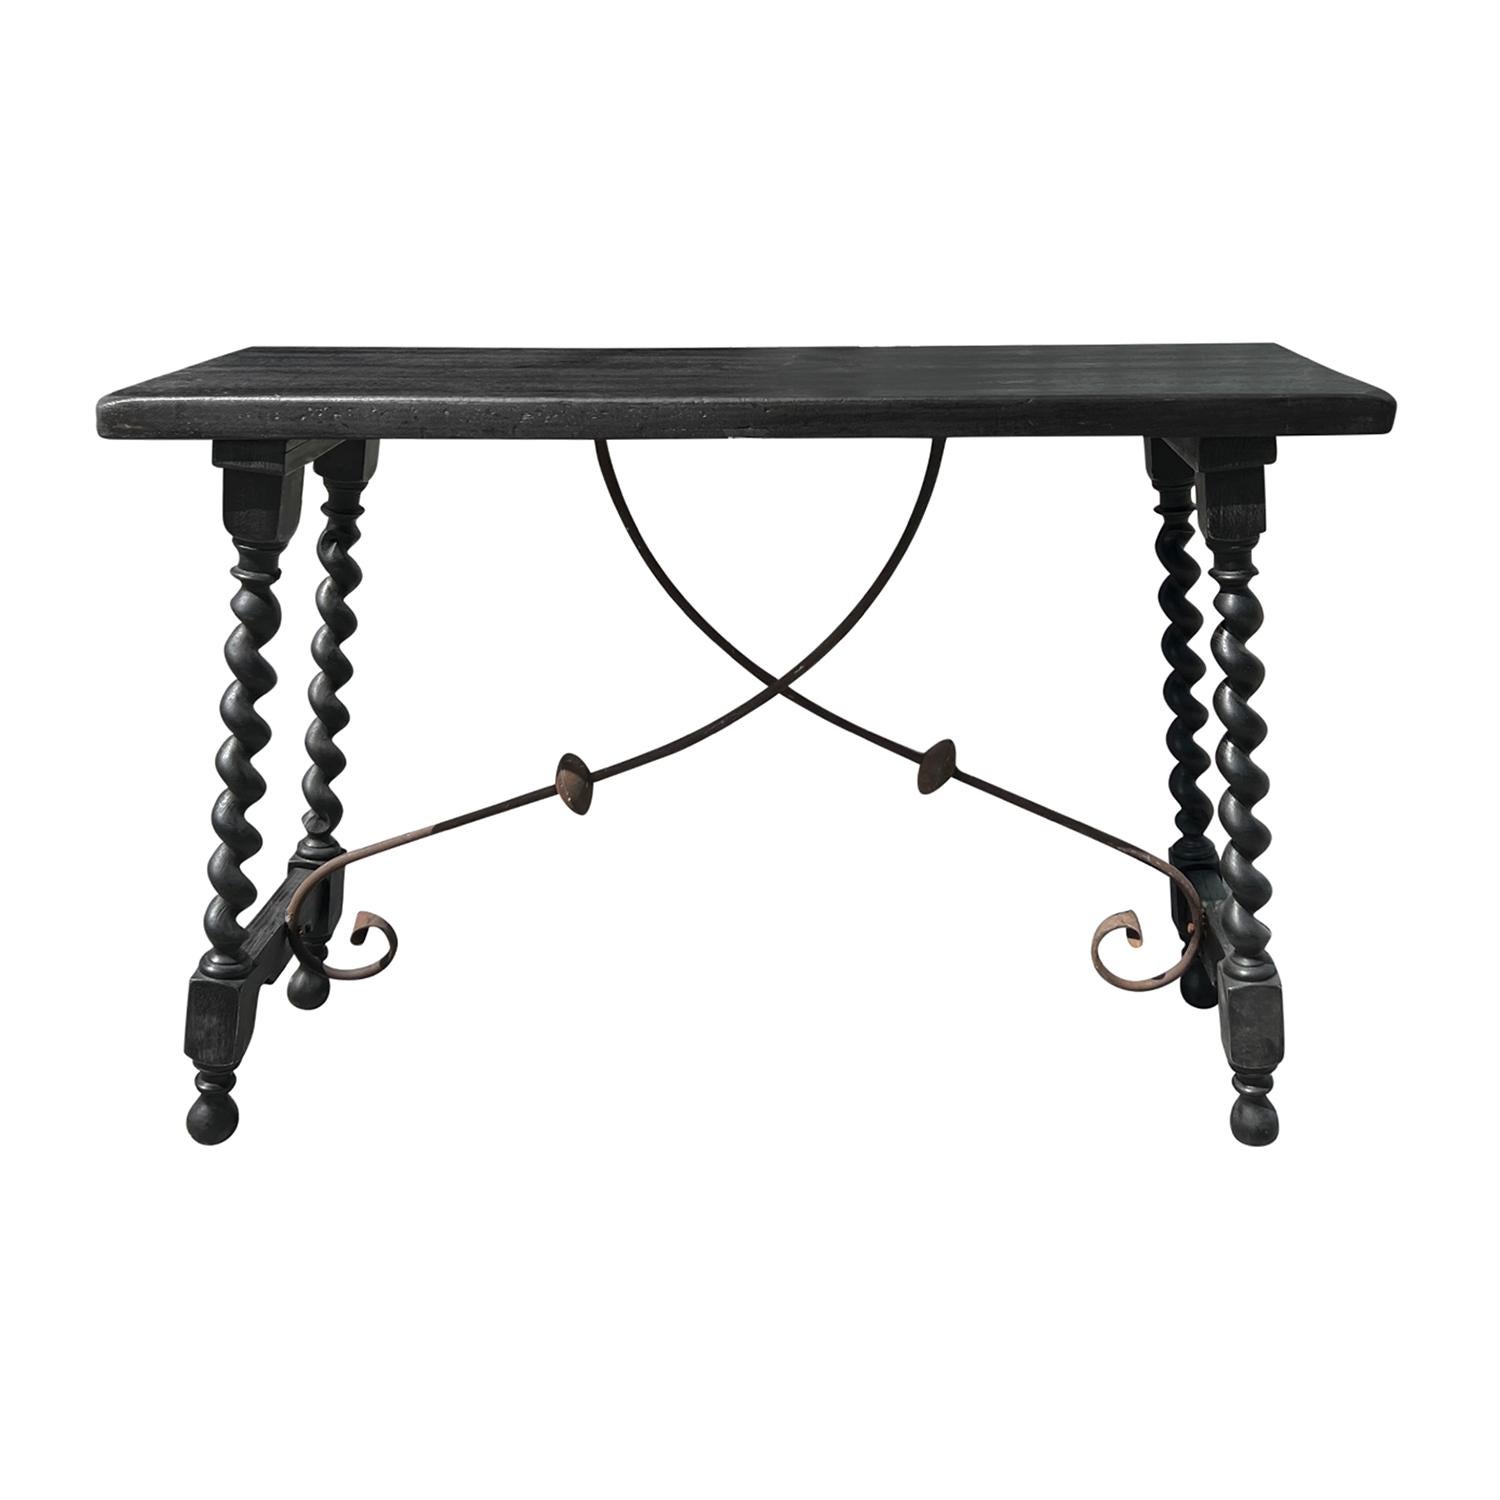 Une belle table d'appoint ou console de style Renaissance toscane du 19ème siècle avec un plateau rectangulaire en noyer, en bon état. La base de la table a des pieds tordus tournés à la main, en noyer, refinis avec de la cire foncée. La base en